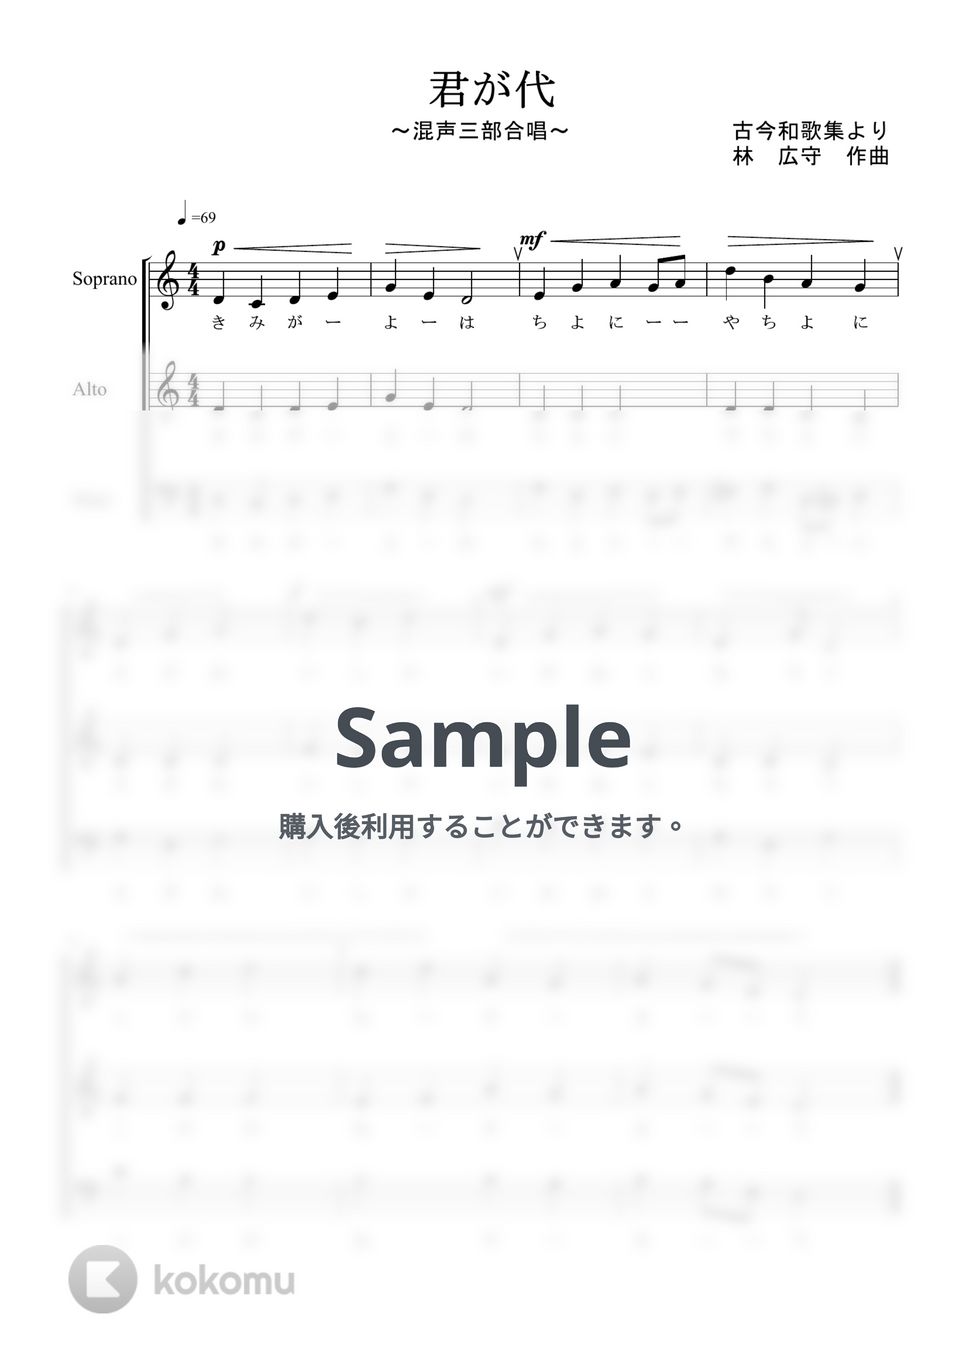 国歌 - 君が代 (混声三部合唱) by kiminabe